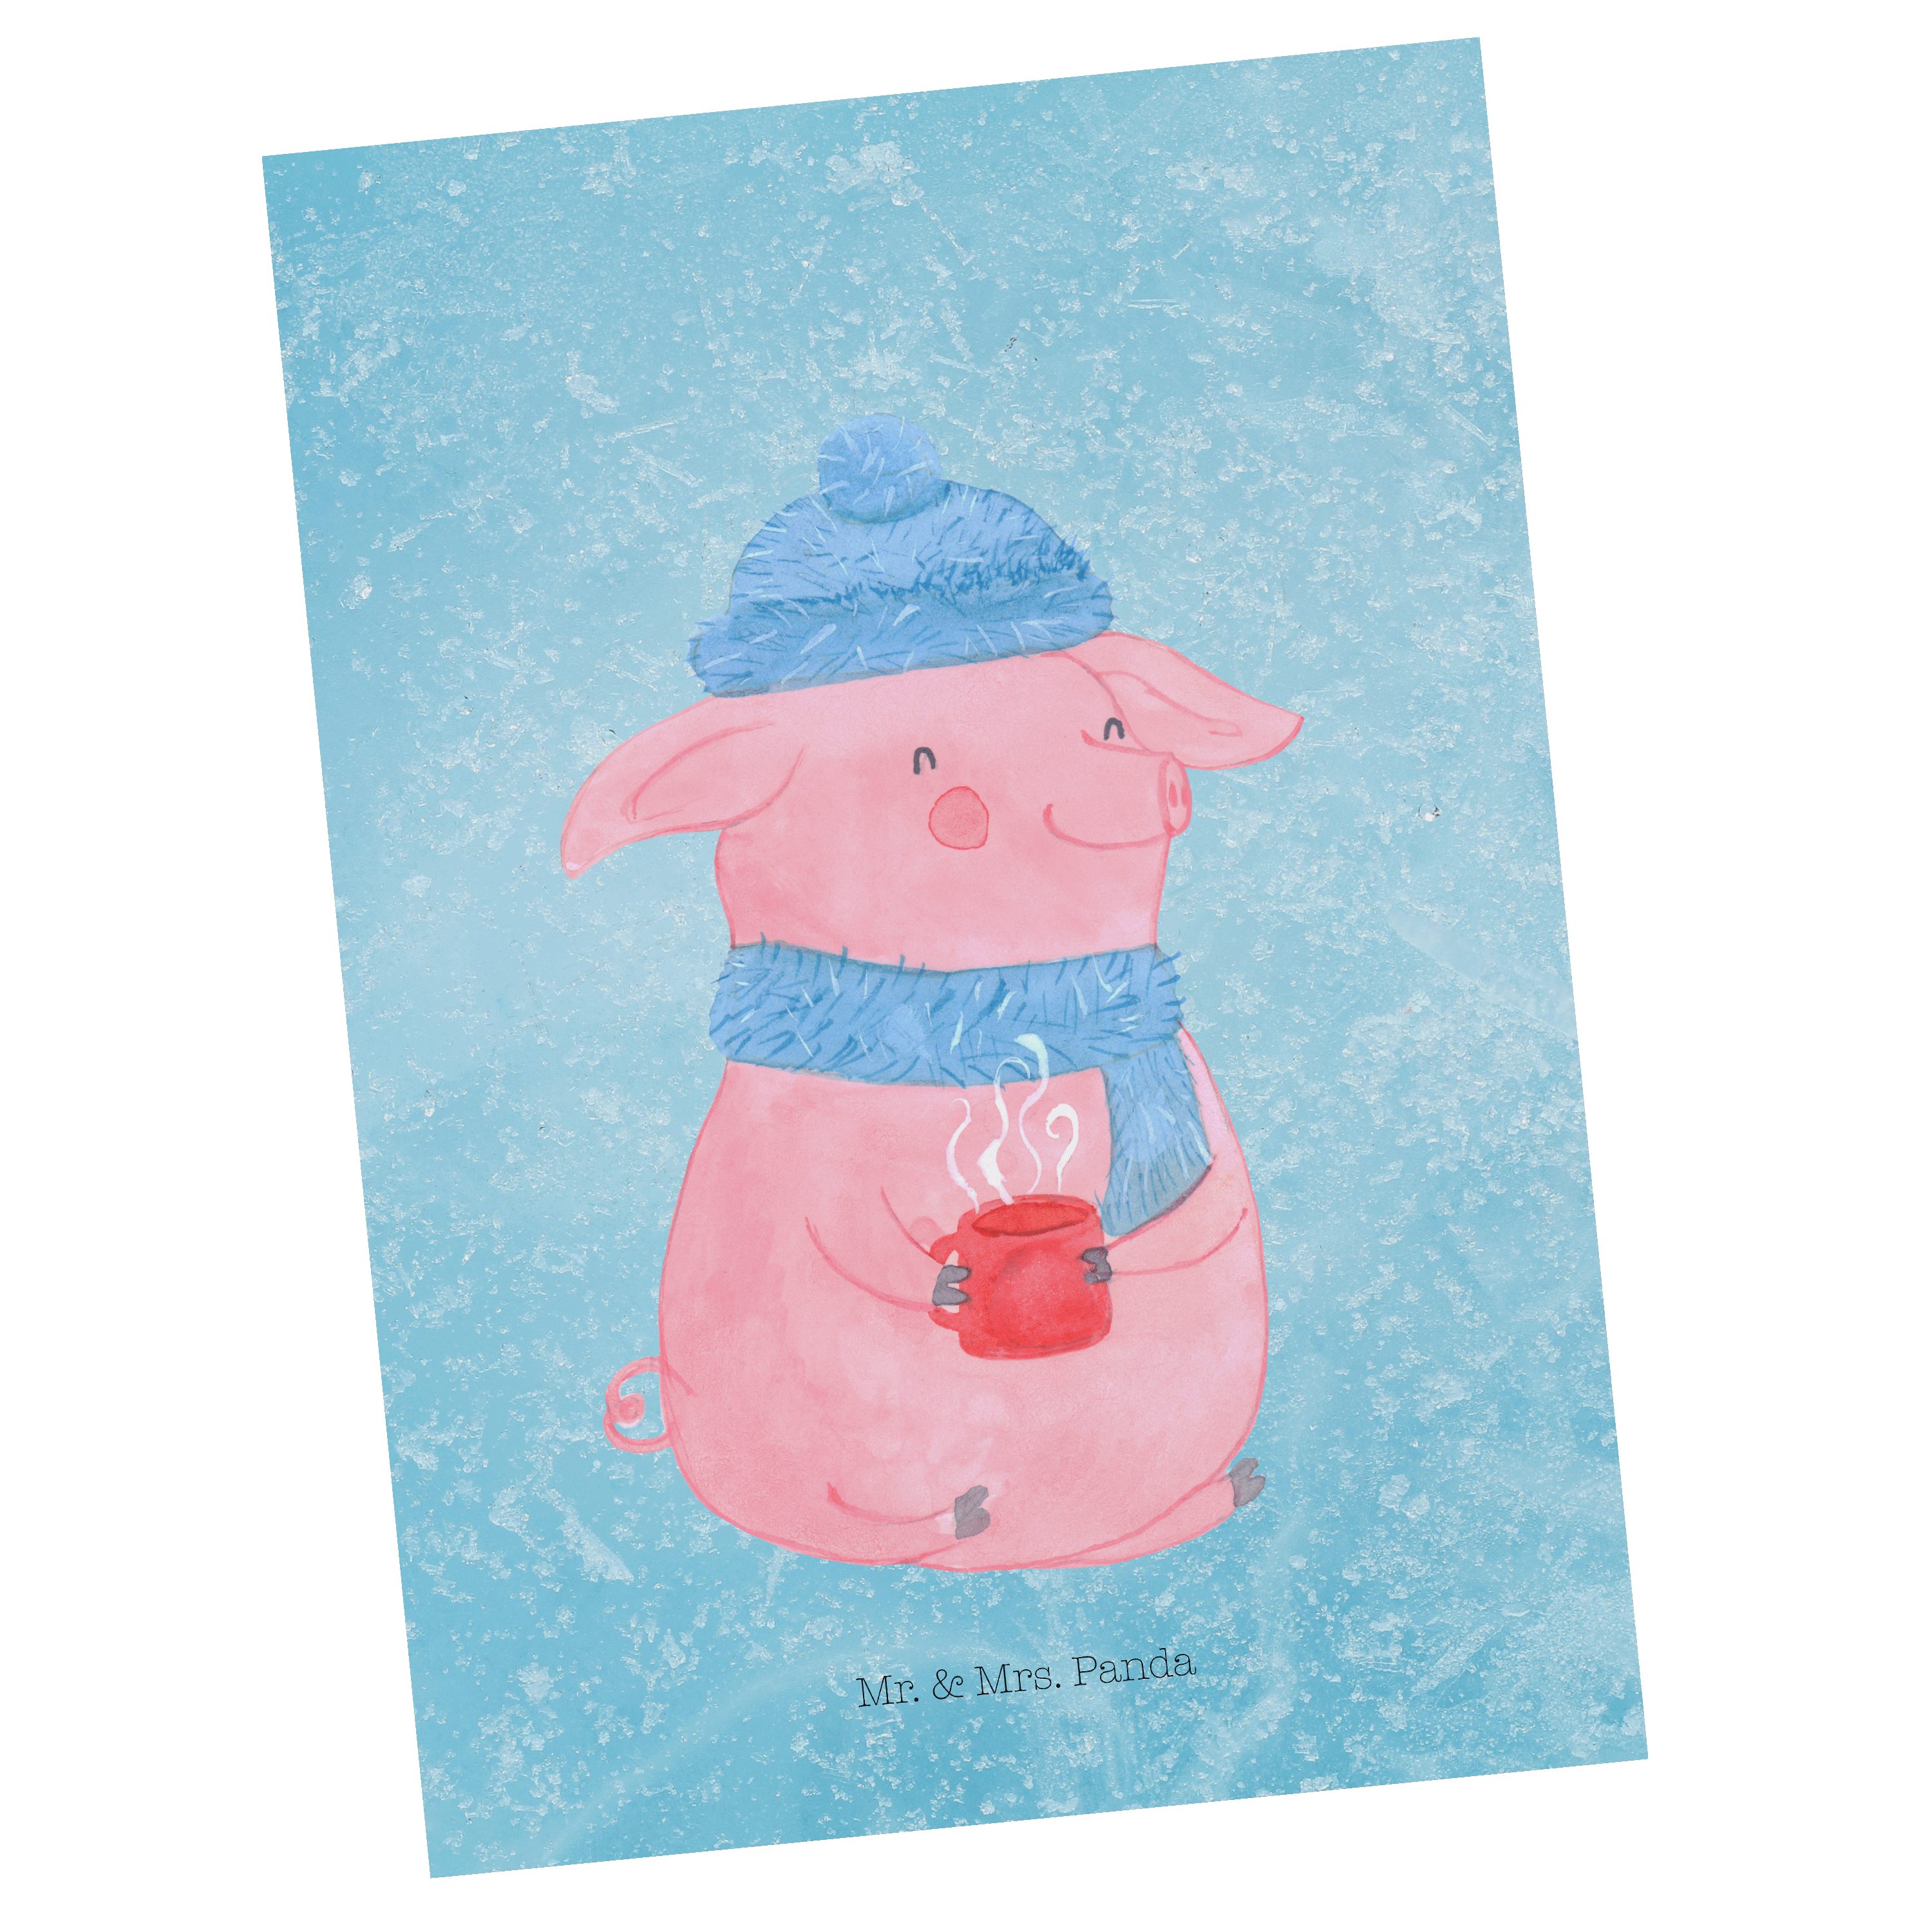 Mr. & Mrs. Panda Postkarte Lallelndes Glühschwein - Eisblau - Geschenk, Weihnachtsdeko, Weihnach